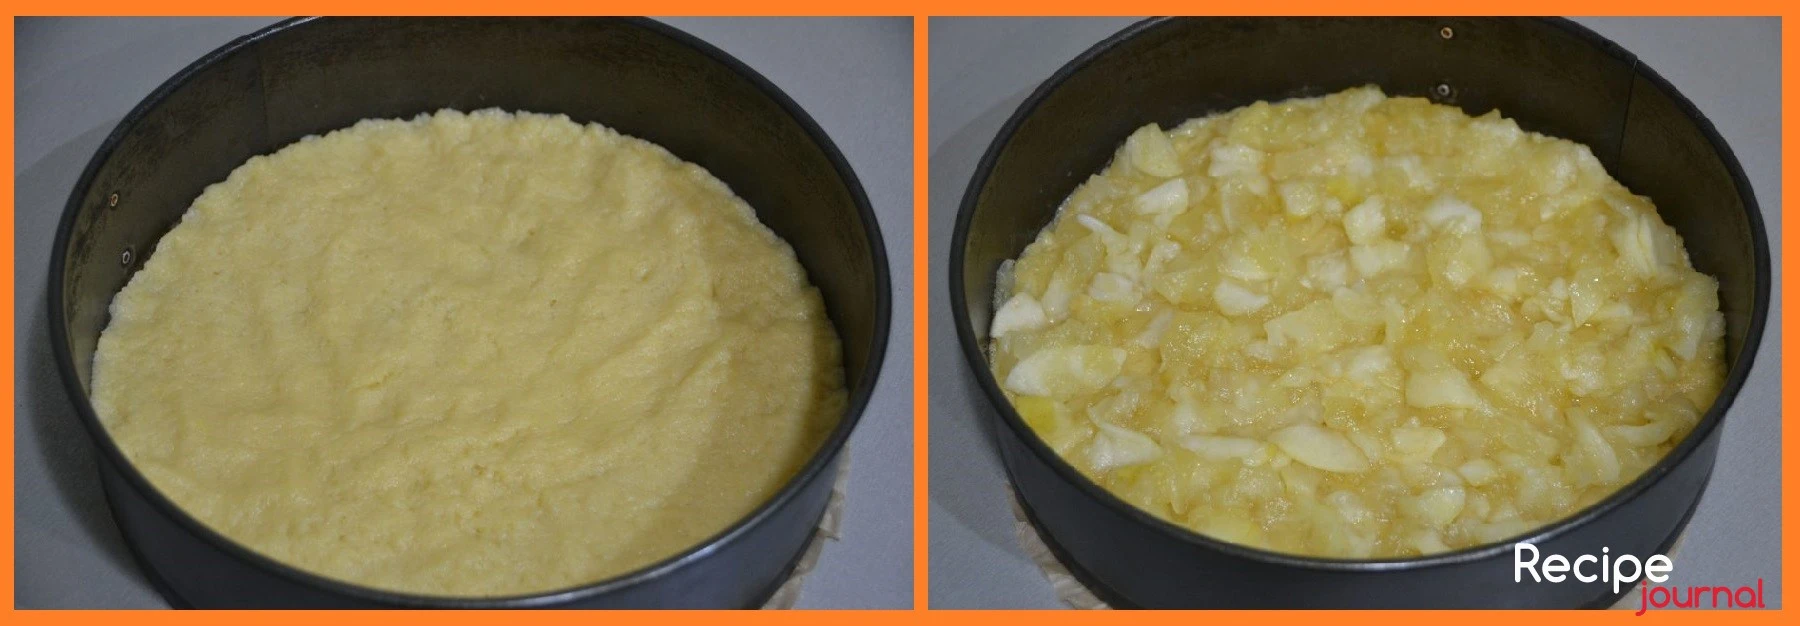 Дно разъемной формы выложим бумагой и раскатаем тесто в пласт, выложим на дно формы без бортиков. На тесто выкладываем подготовленные в сковороде яблоки.